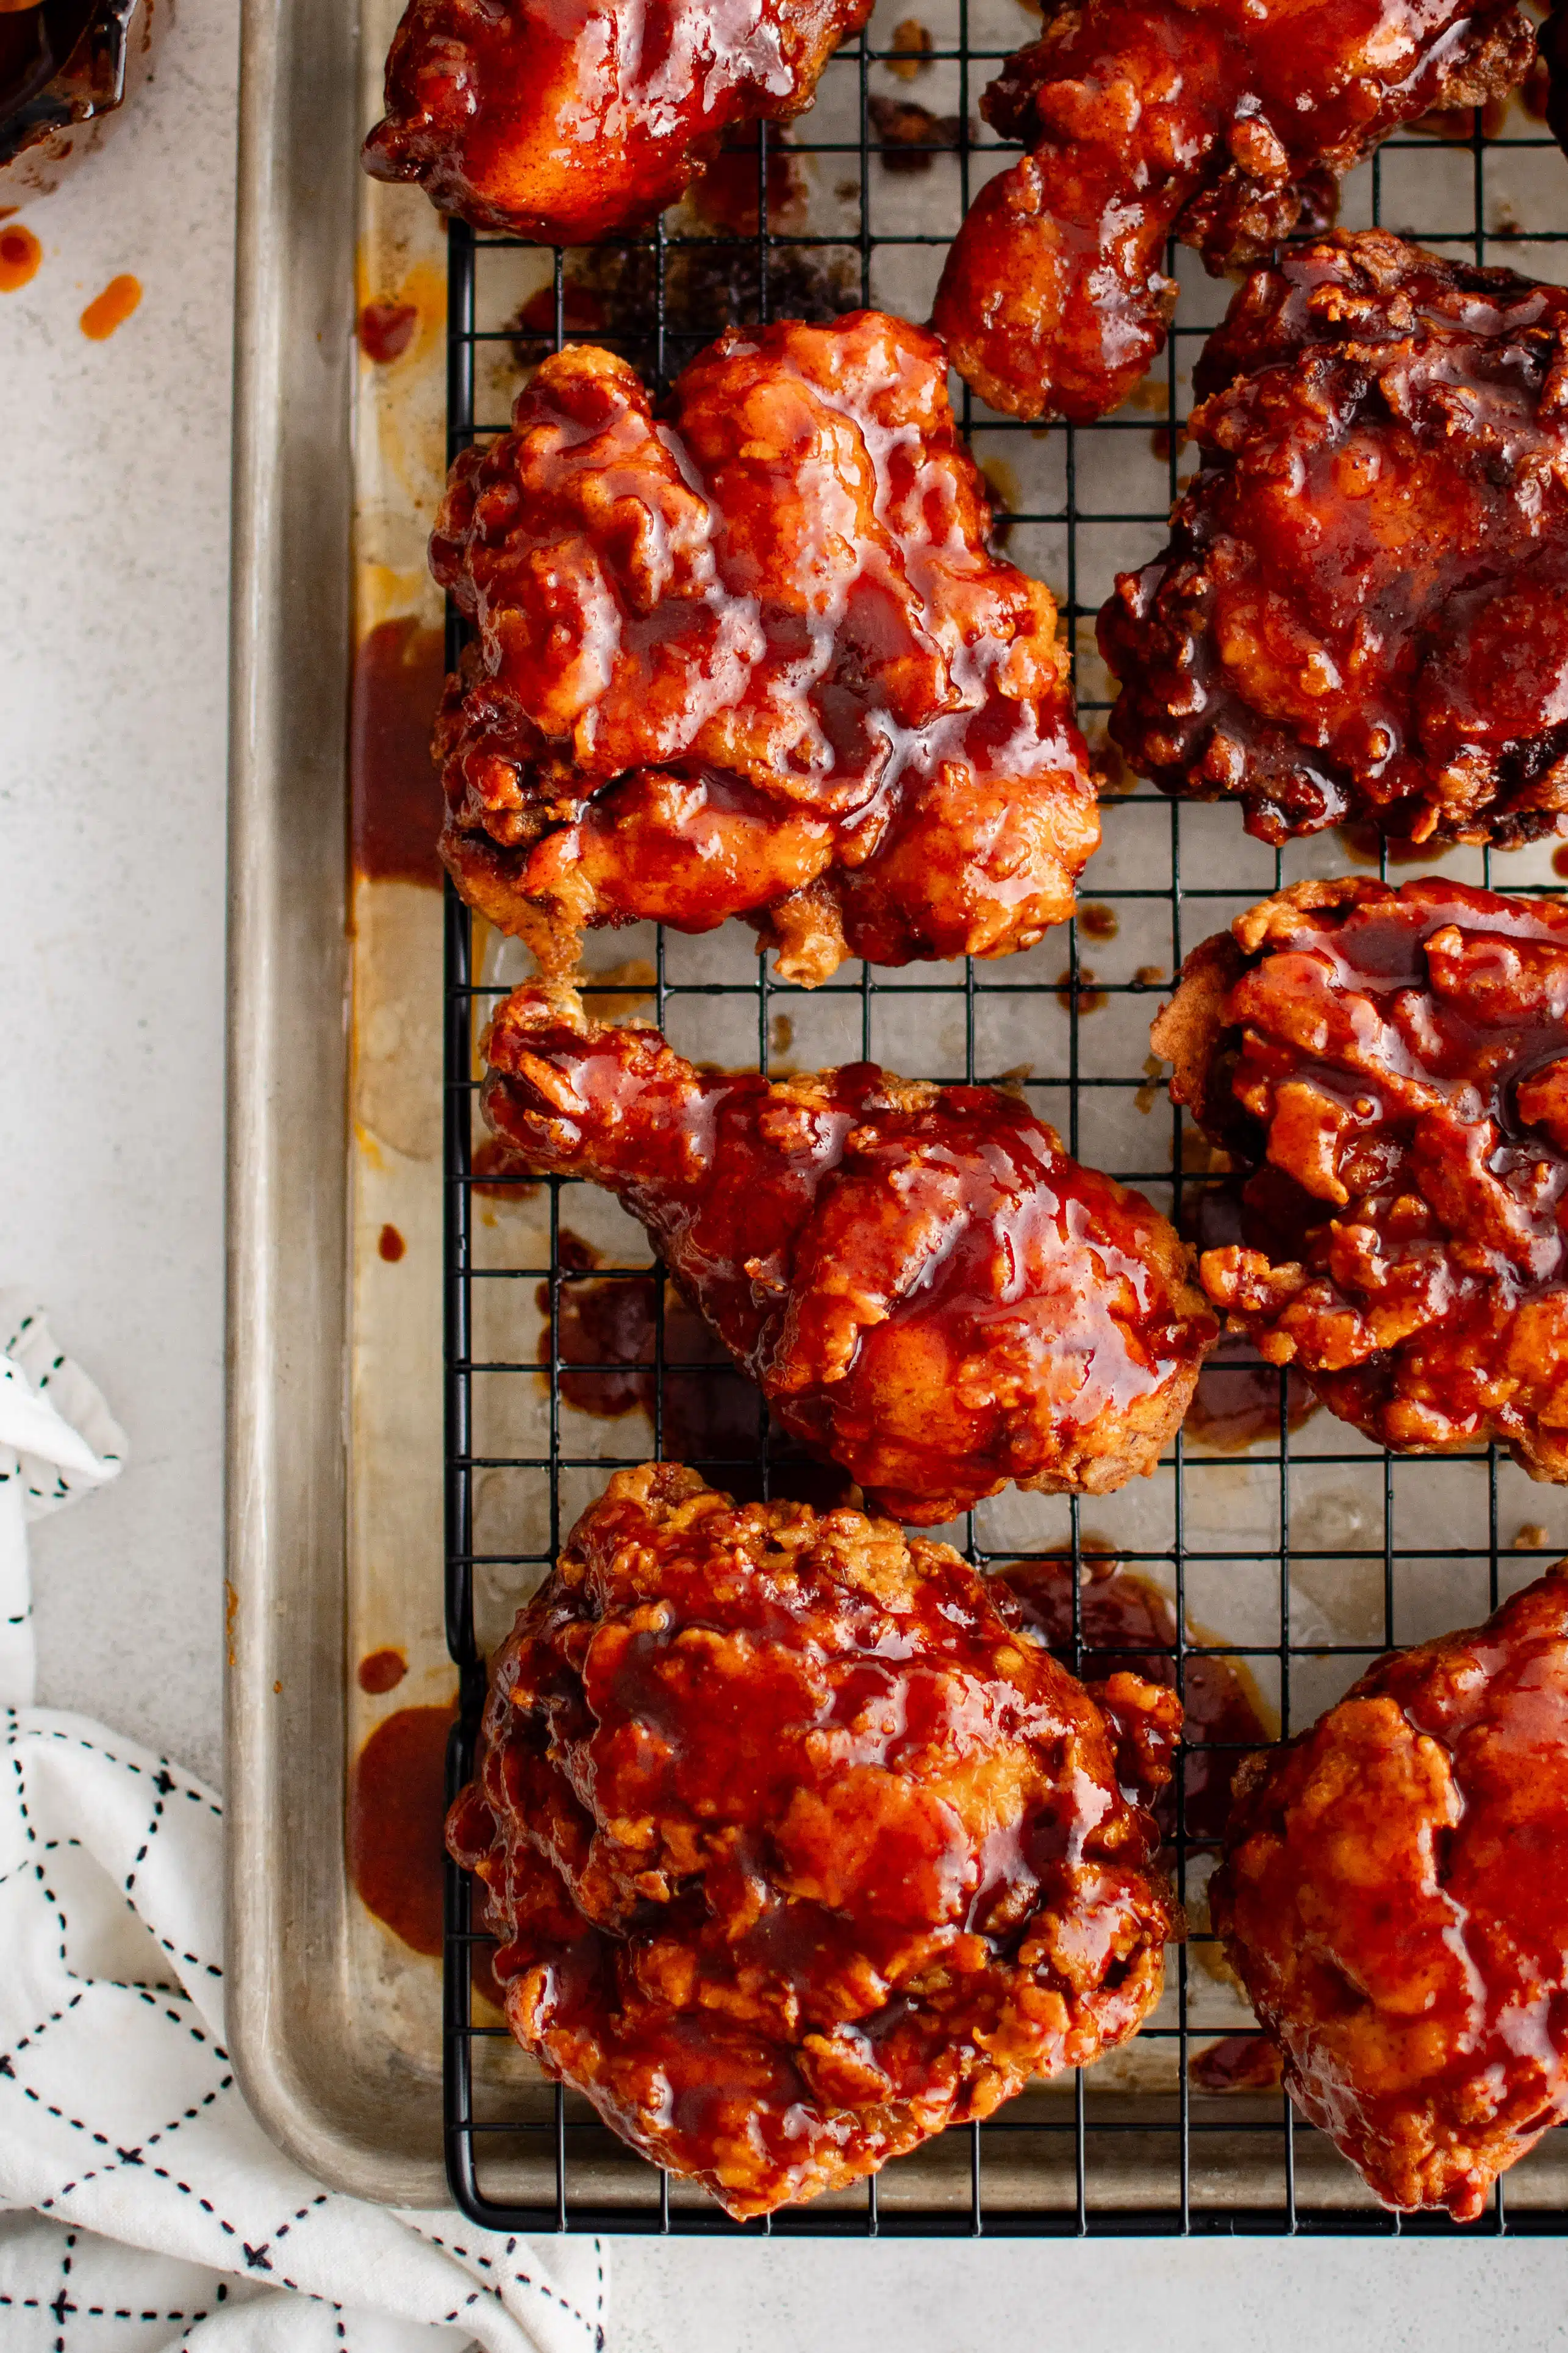 Crispy pieces of Nashville hot chicken on a baking rack set inside a large rimmed baking sheet.